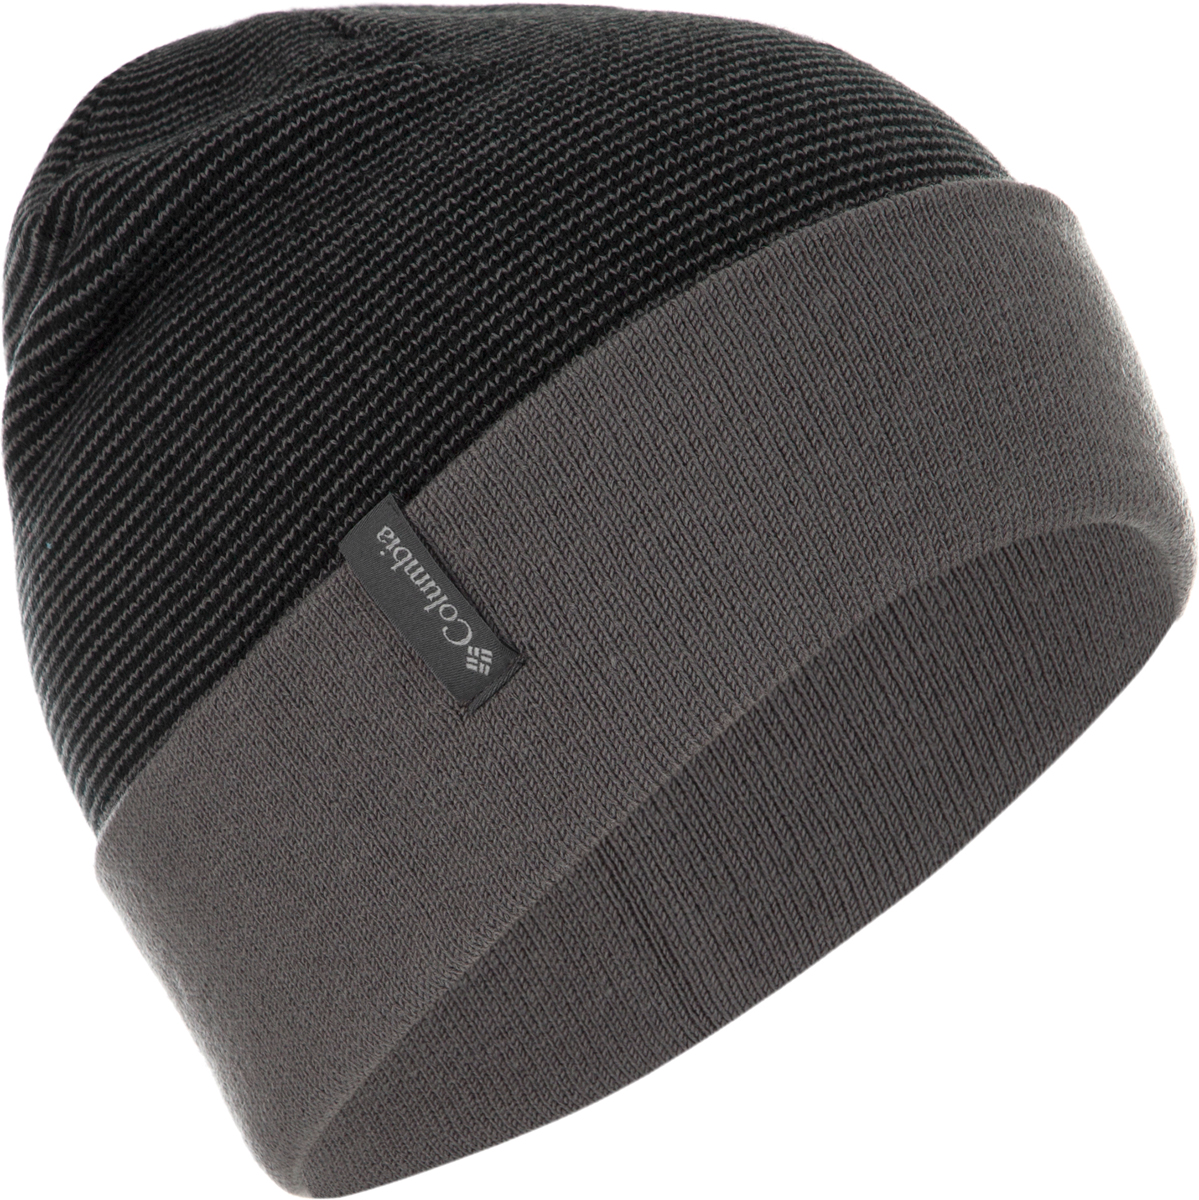 Шапка мужская Columbia Cascade Reversible Watchcap Hat, цвет: черный. 1682191-011. Размер универсальный